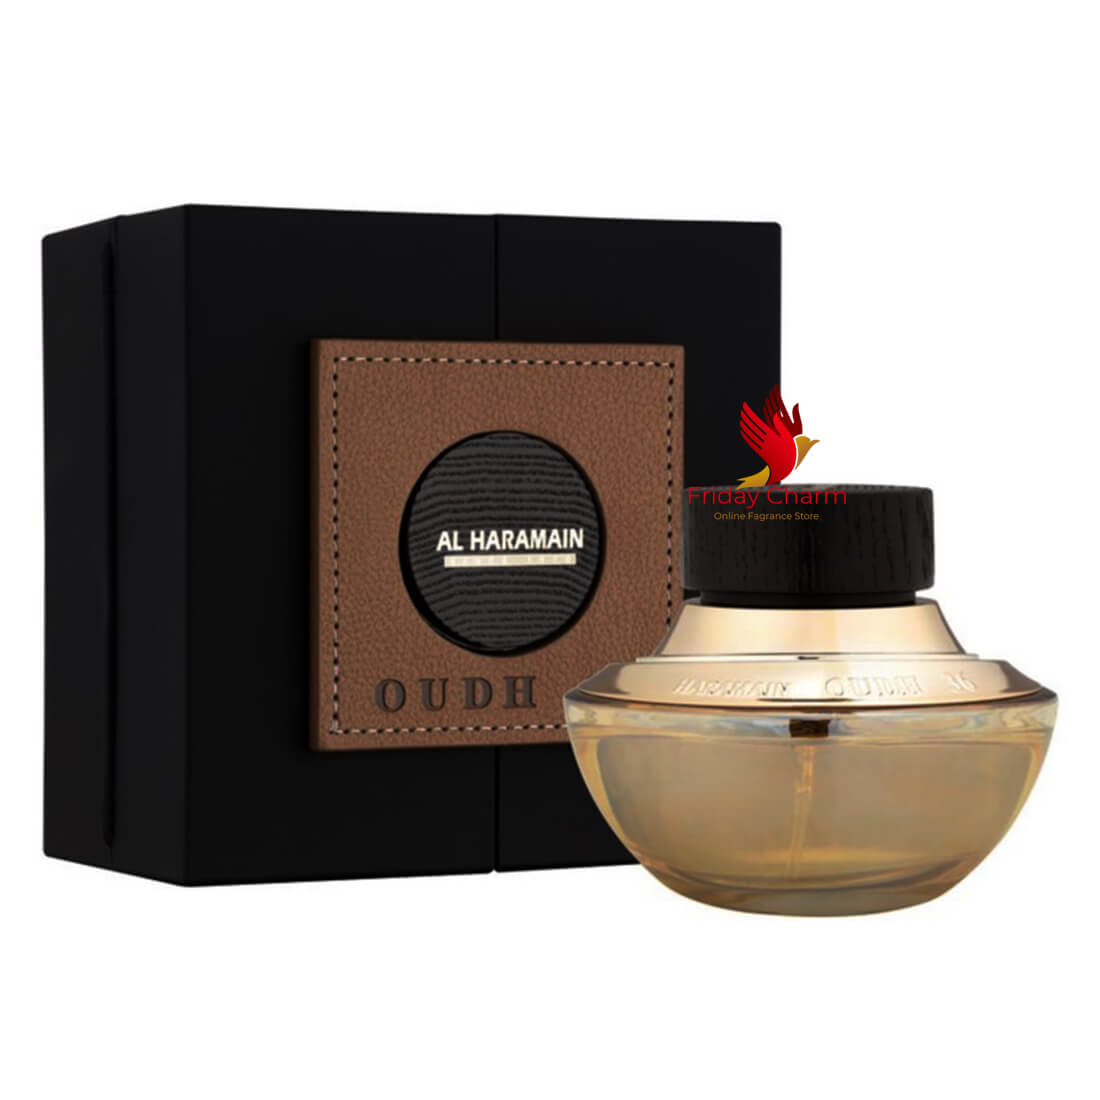 Al Haramain Oudh 36 Parfume Spray - 75ml